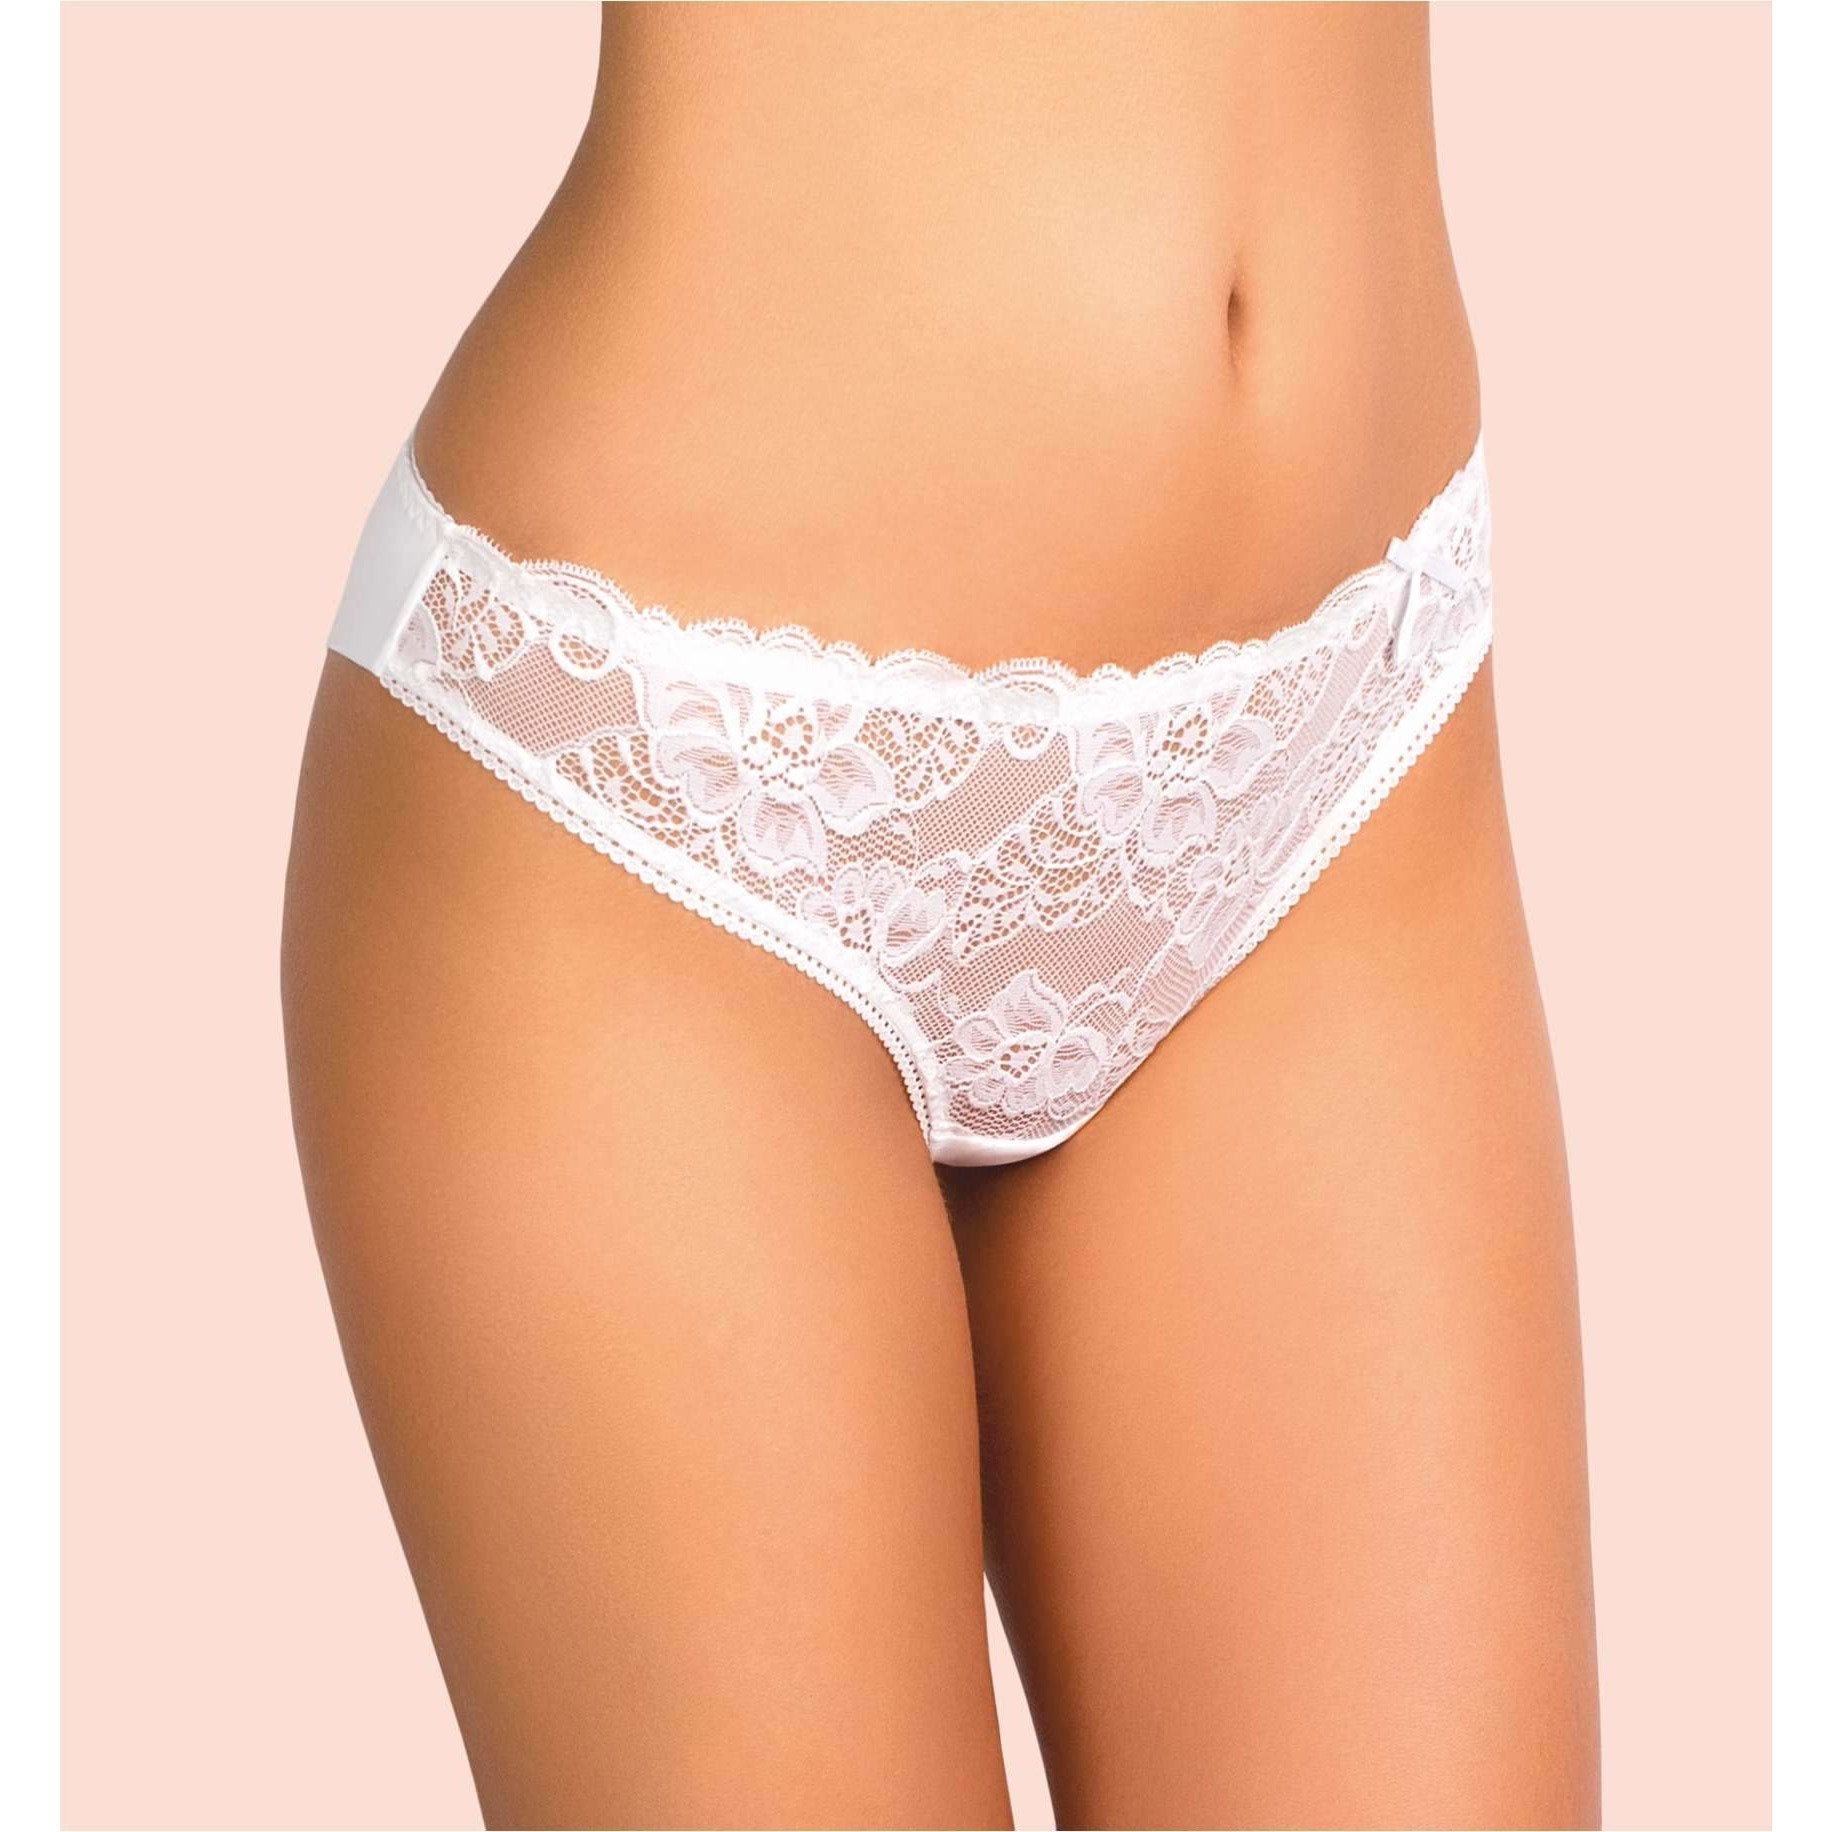 Women underwear, Lace & Microfiber, white. Nasturtium, – Sara Lauren USA